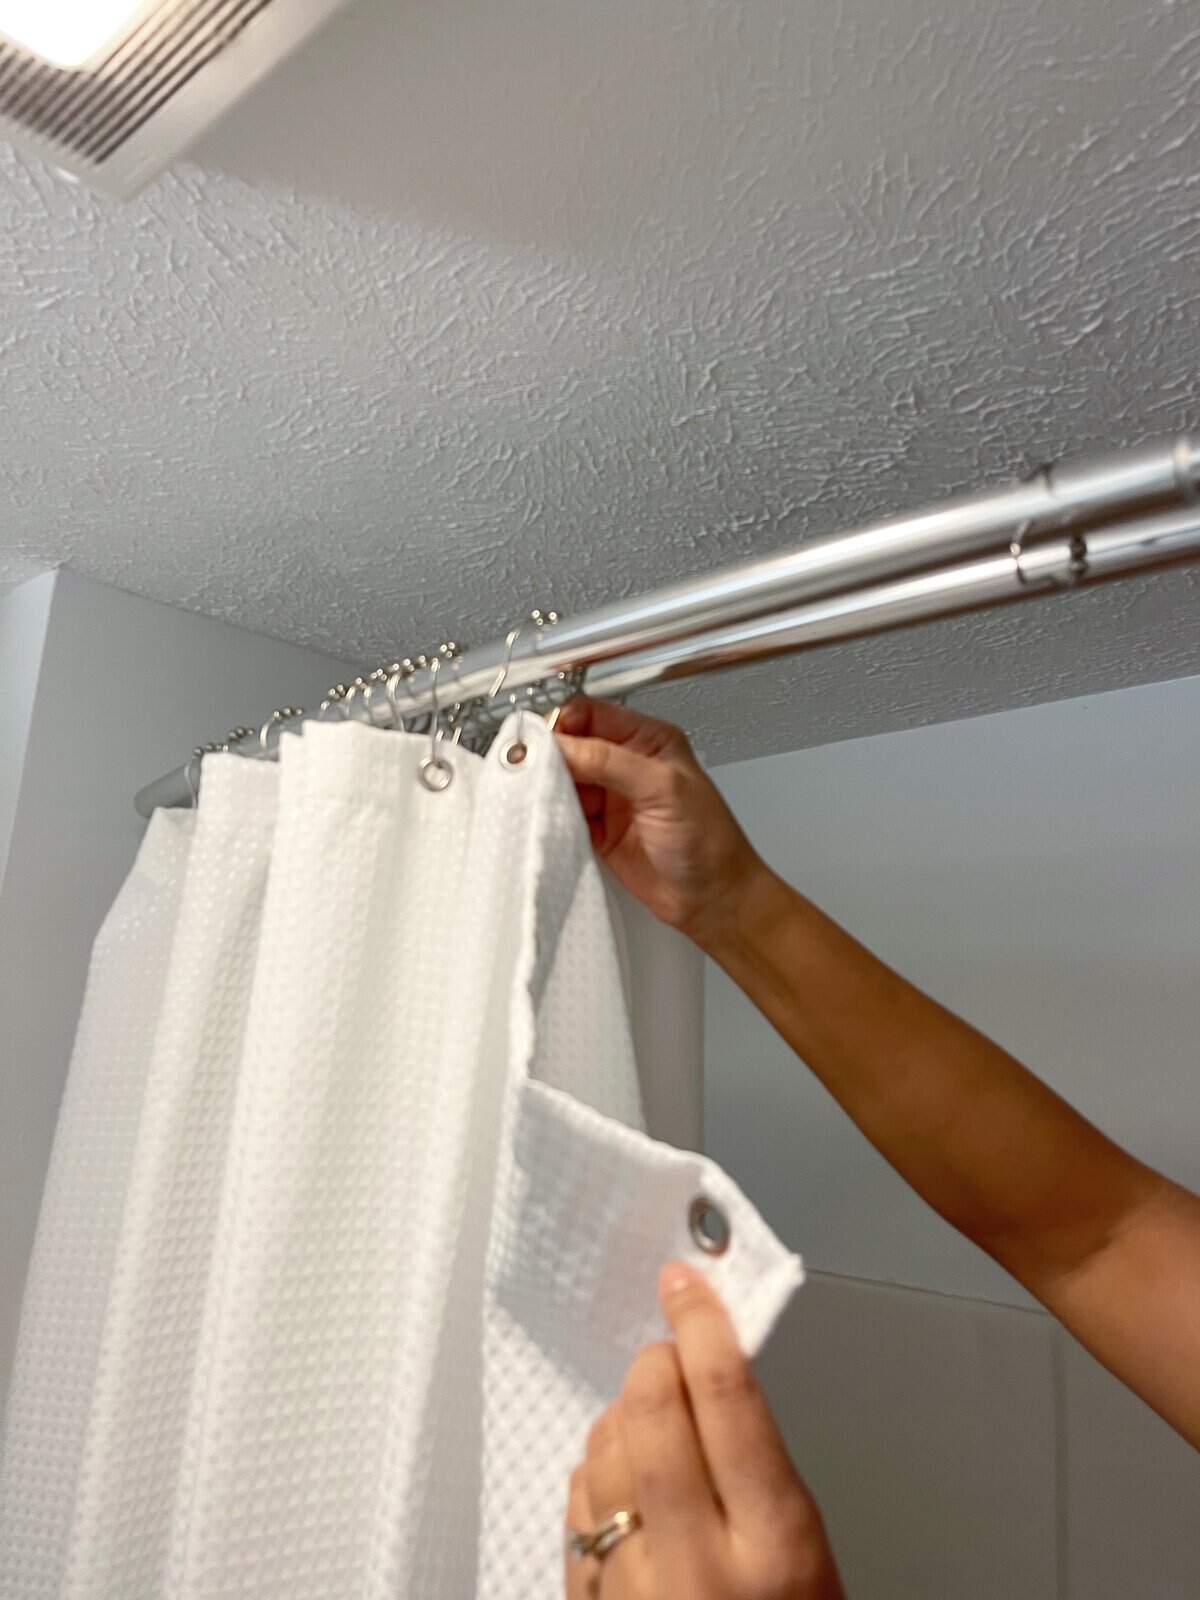 replacing shower glass door home renovation